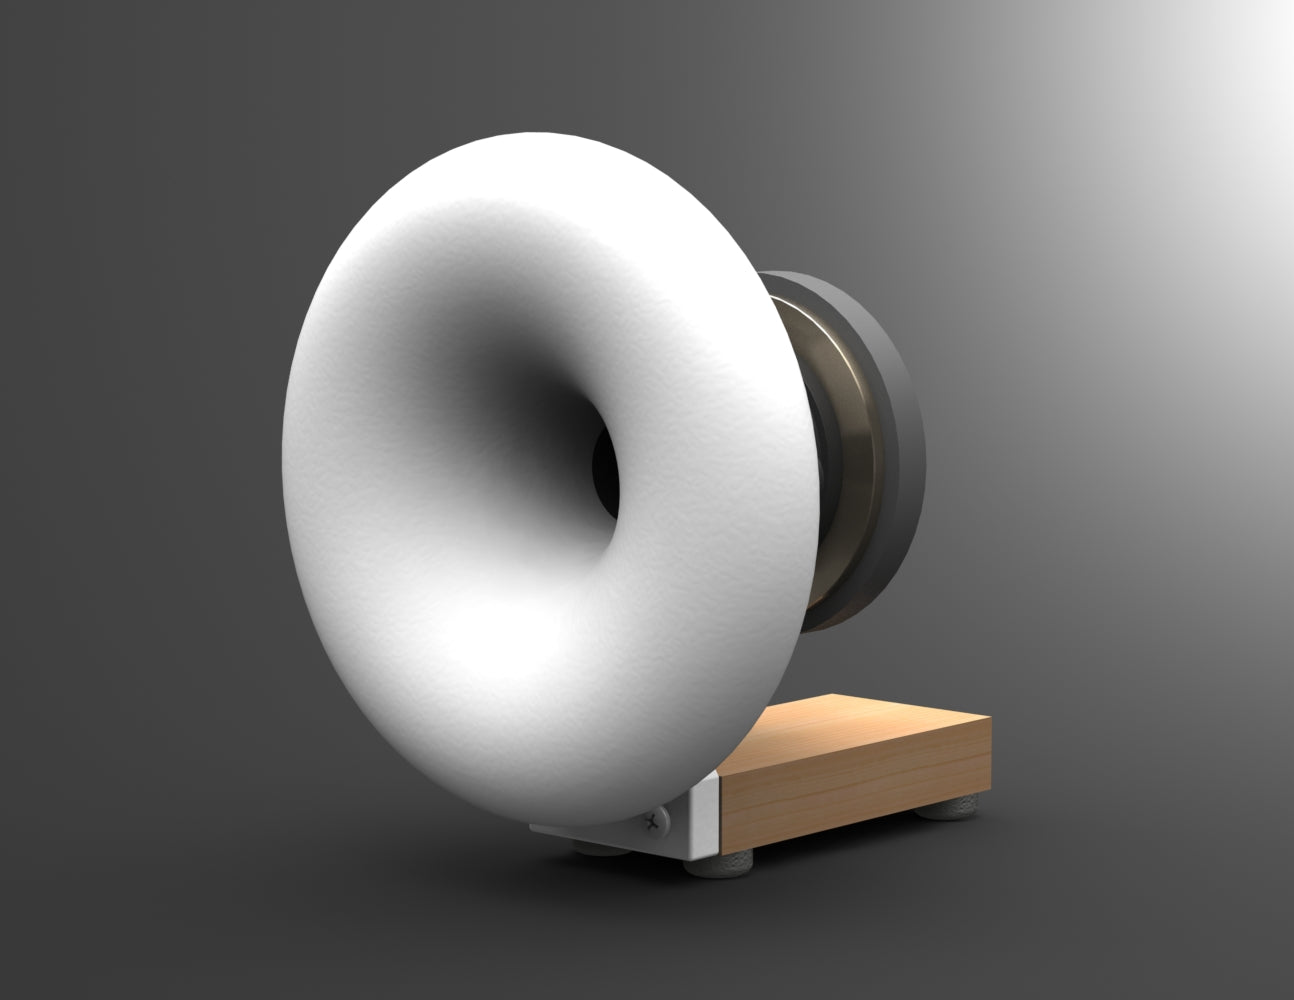 3D Print Your Own ES-1700 Horn – Joseph Crowe